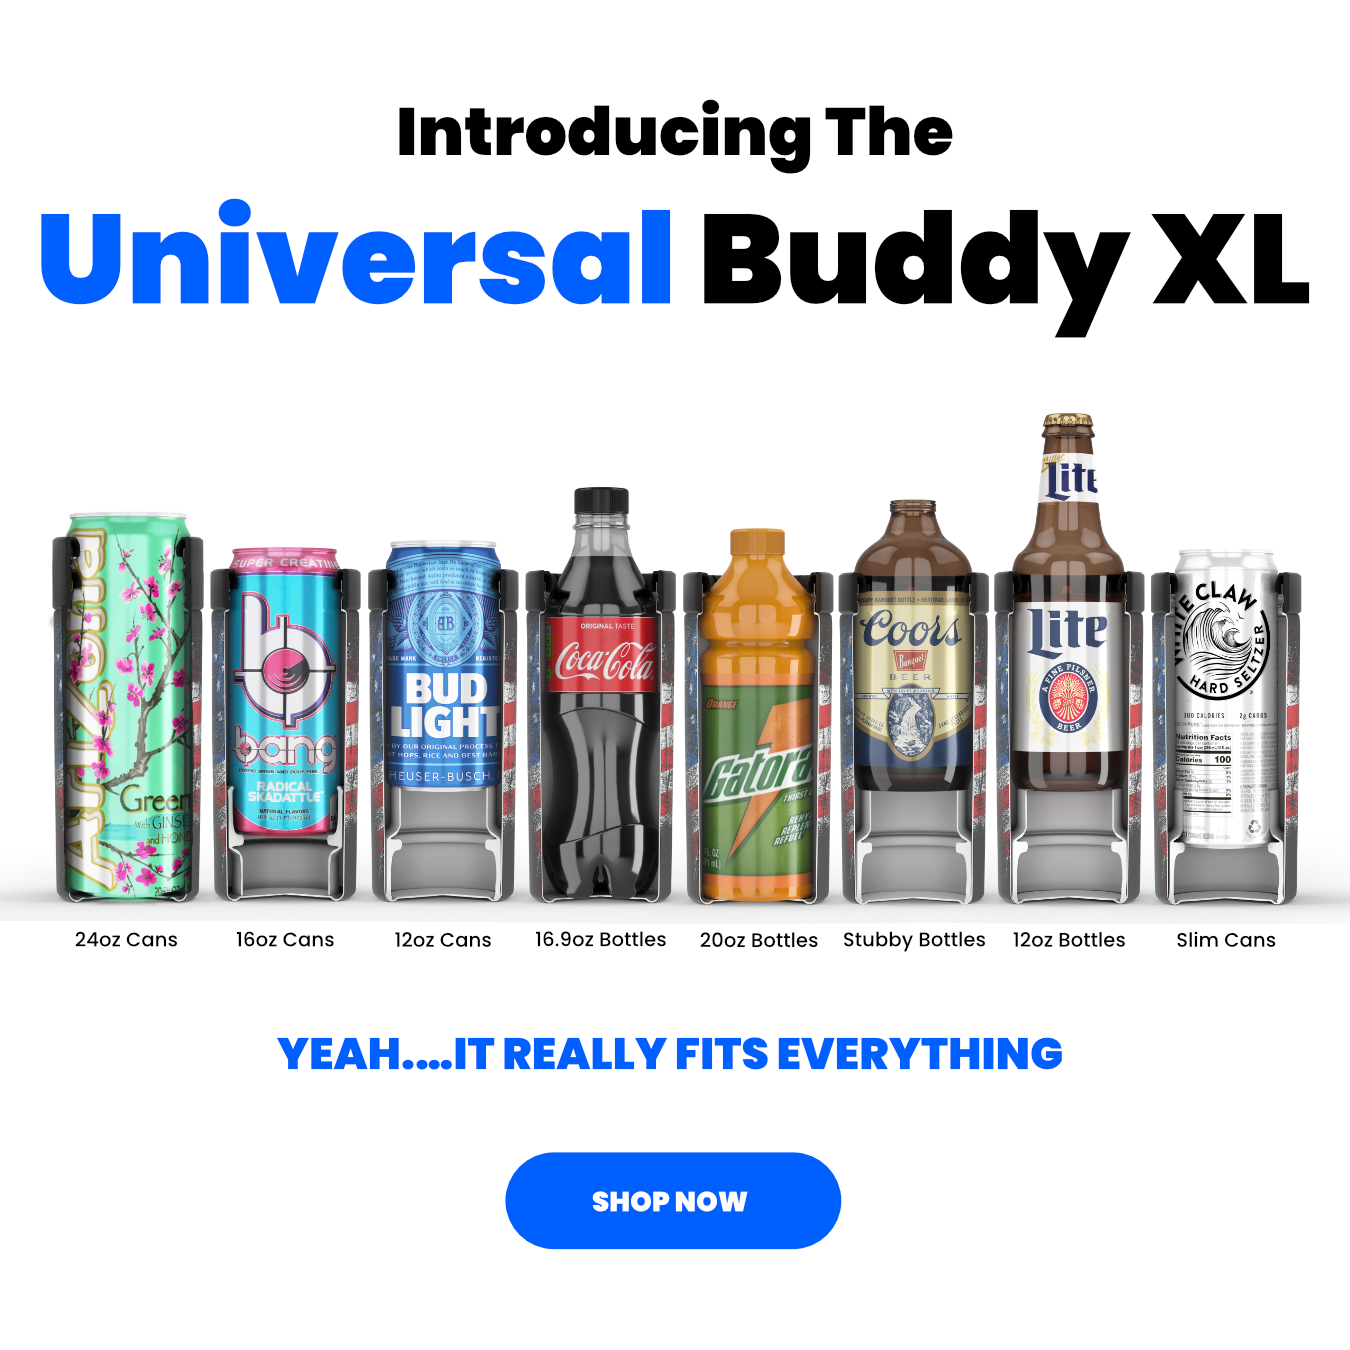 Universal Buddy XL